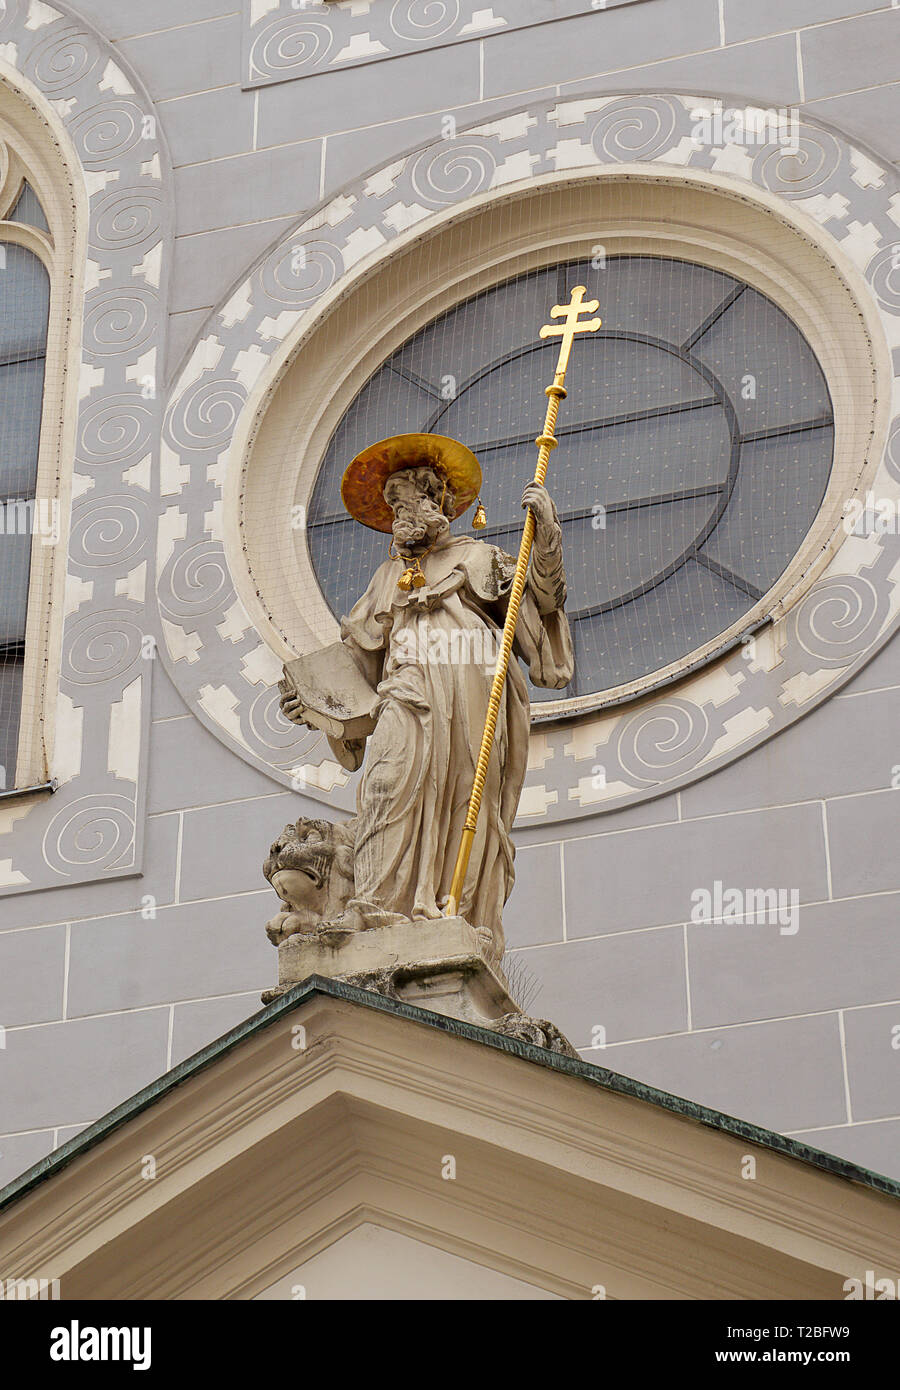 Der hl. Hieronymus, auch als Hl. Hieronymus bekannt, mit dem Löwen, die ihn angefreundet, als Statue über dem Eingang der Franziskanerkirche in Wien Stockfoto